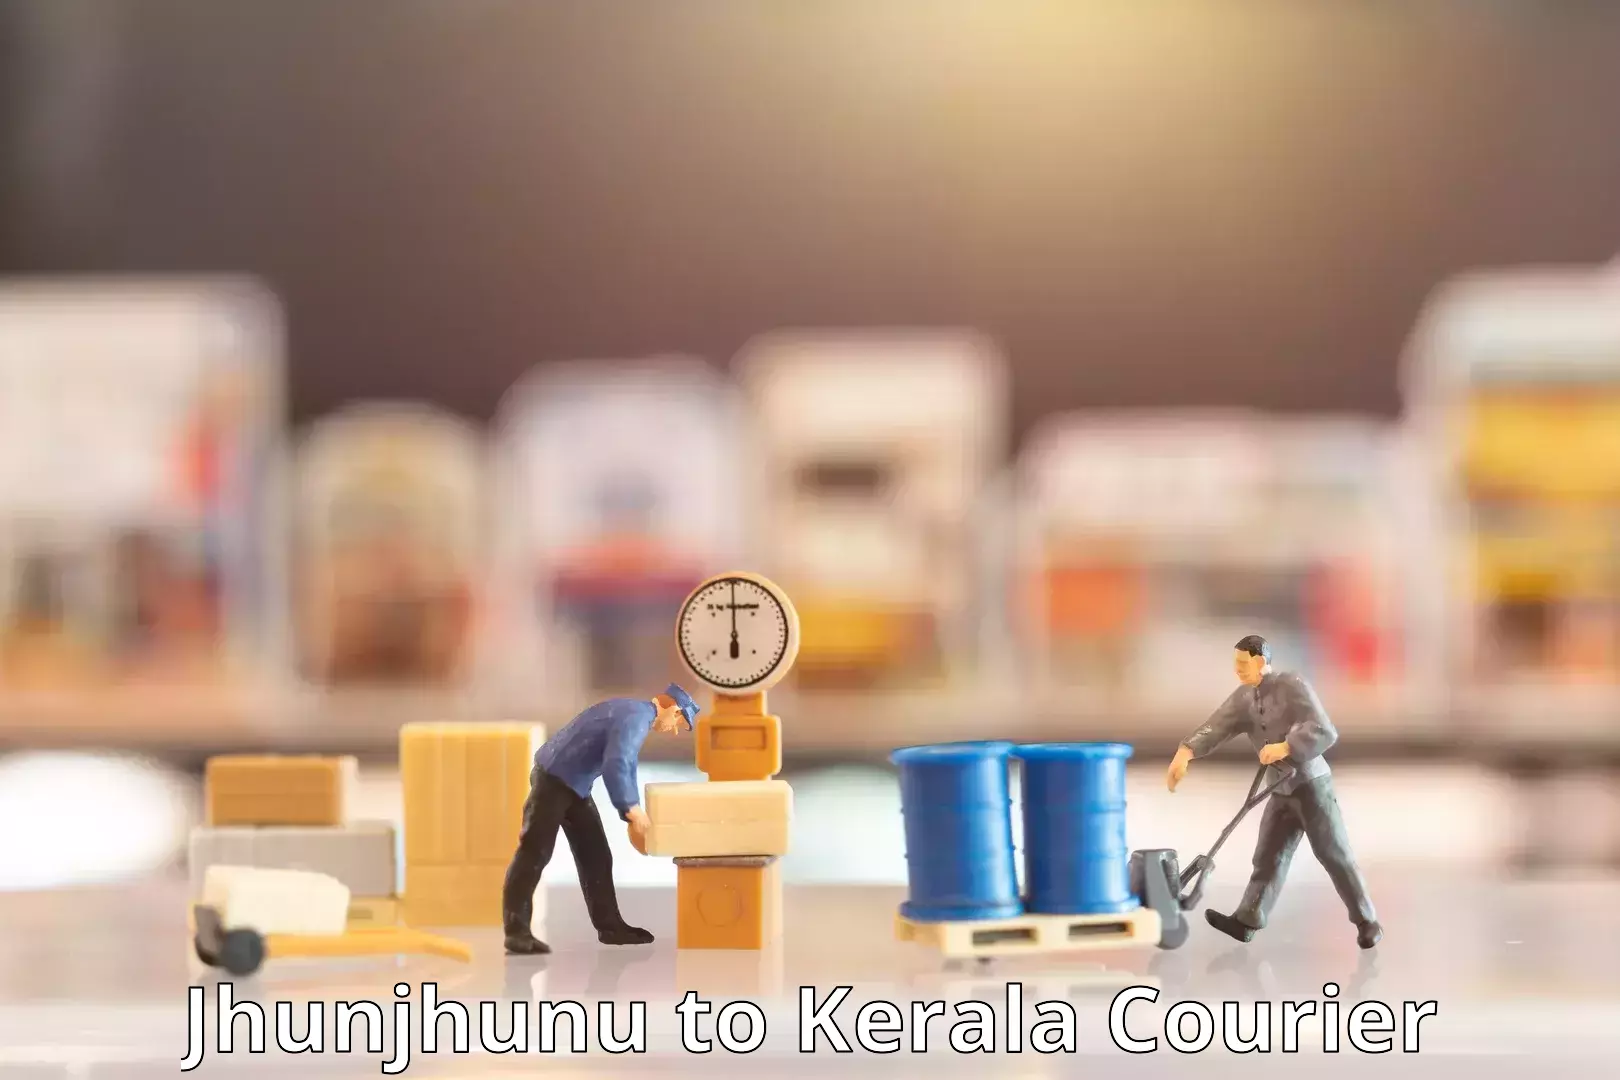 International courier rates Jhunjhunu to Kothamangalam